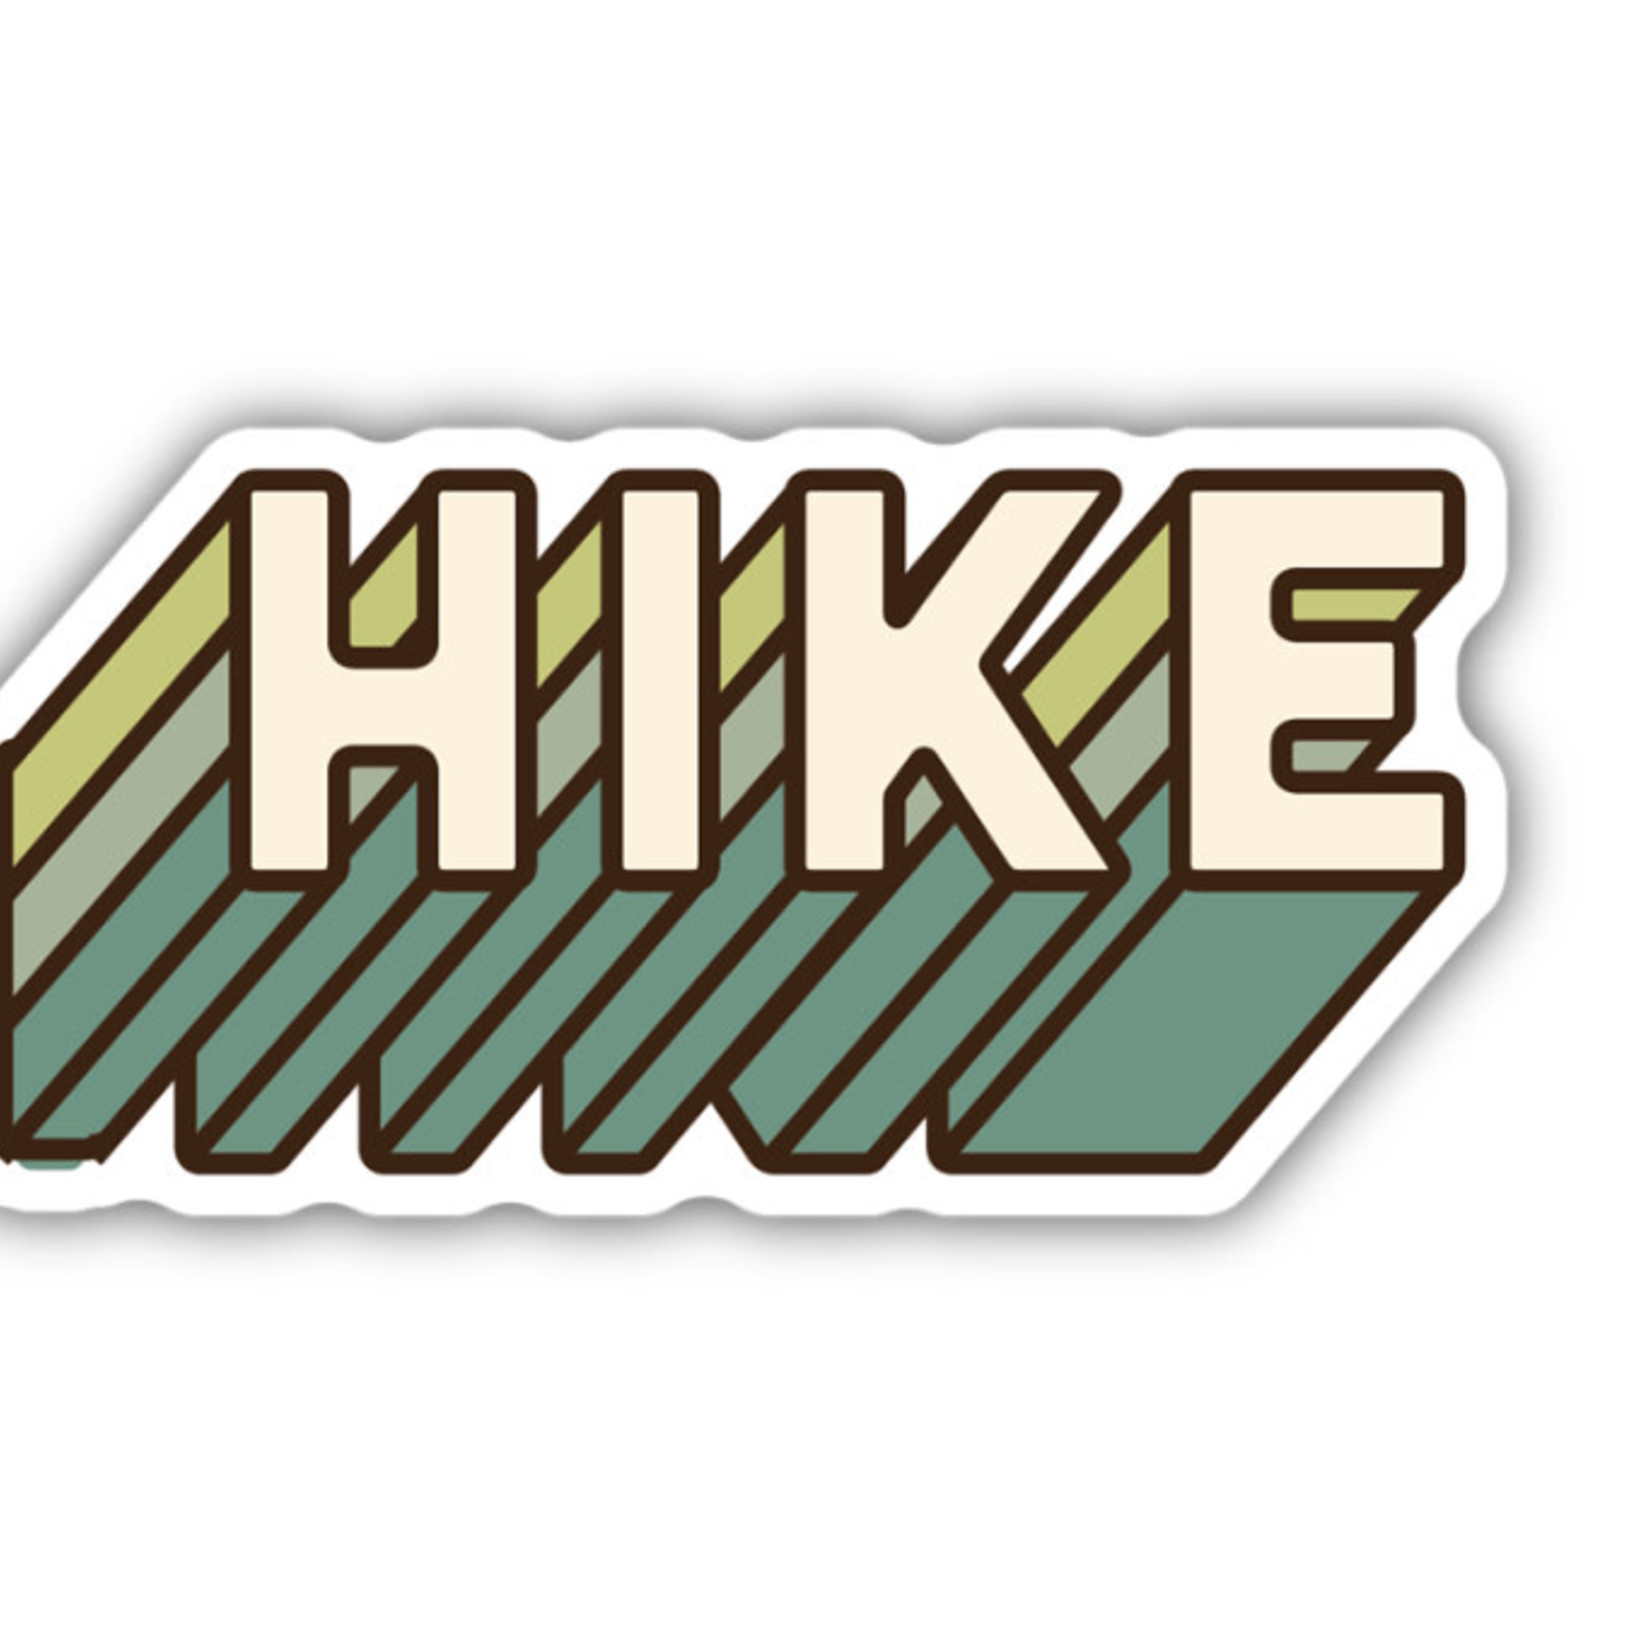 Stickers Northwest Hike sticker